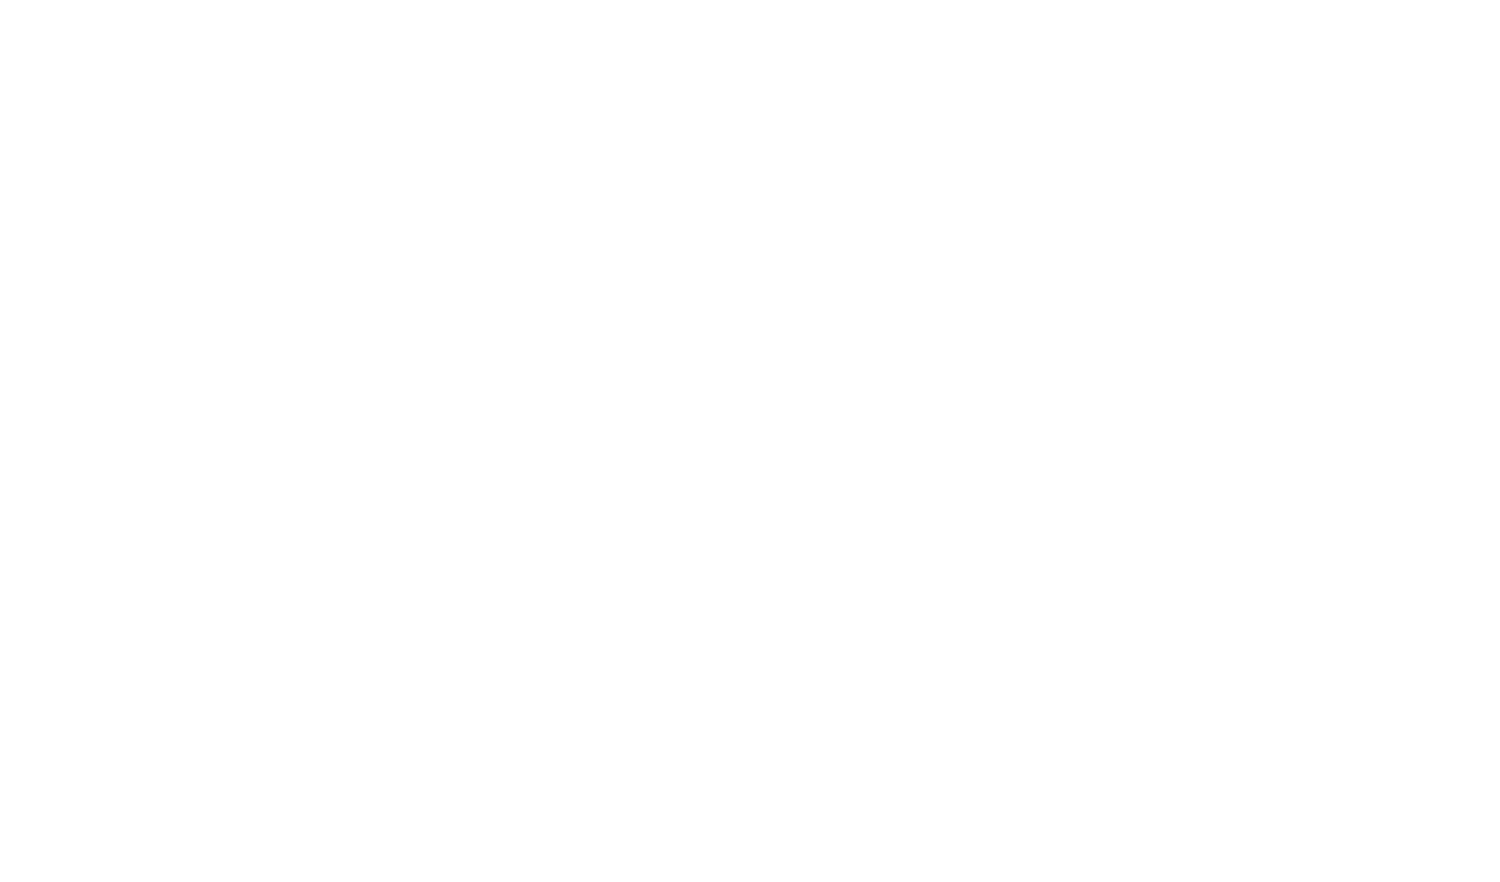 Riverbend Urban Village